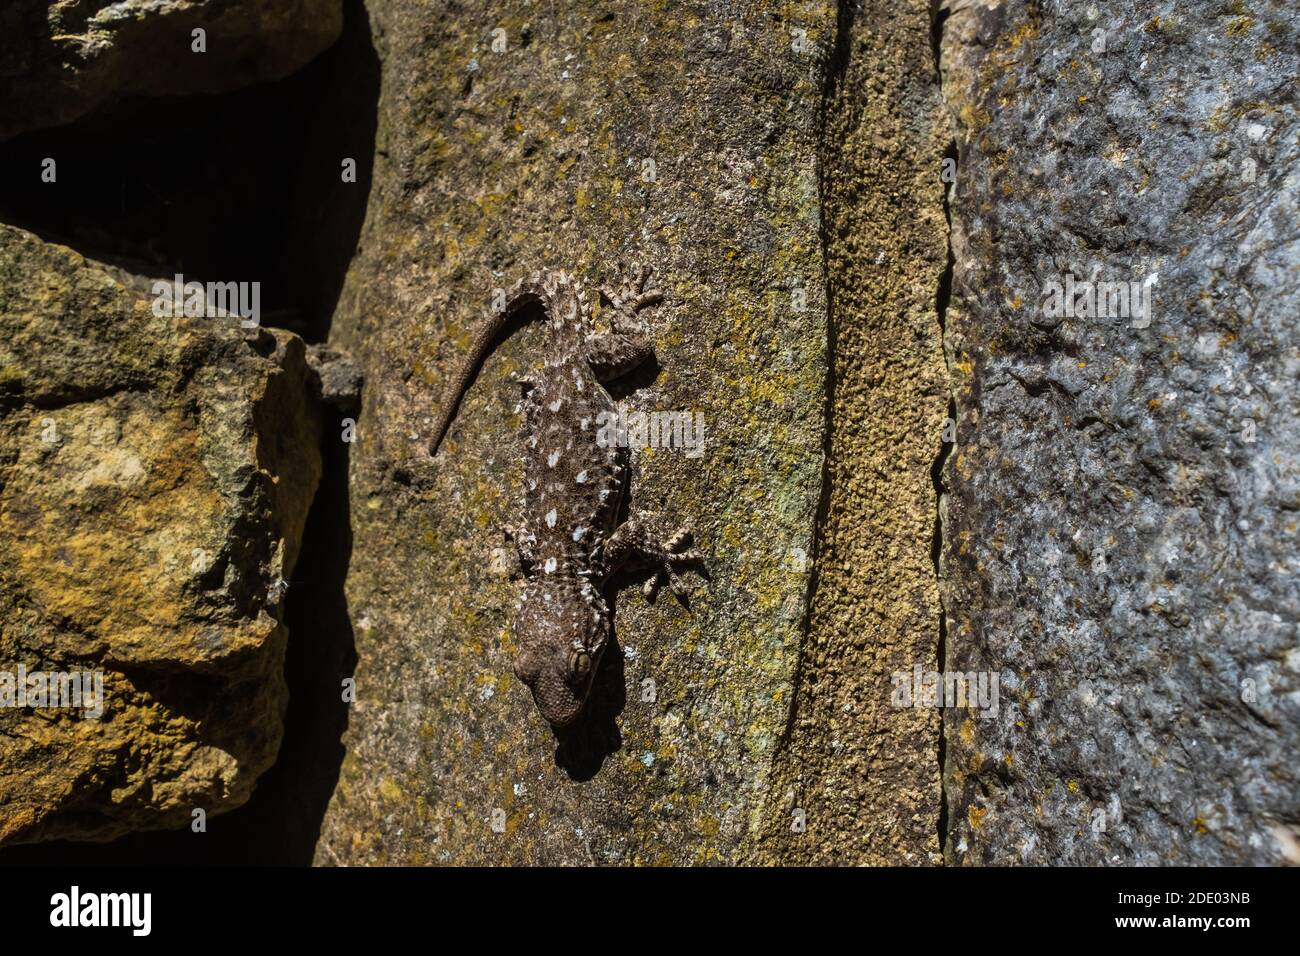 Der Maurische Gecko (Tarentola mauritanica) ist eine typische Art der mediterranen Macchia. Dieses Beispiel im Hinterhalt auf einem Felsen, fotografiert in Portugal. Stockfoto